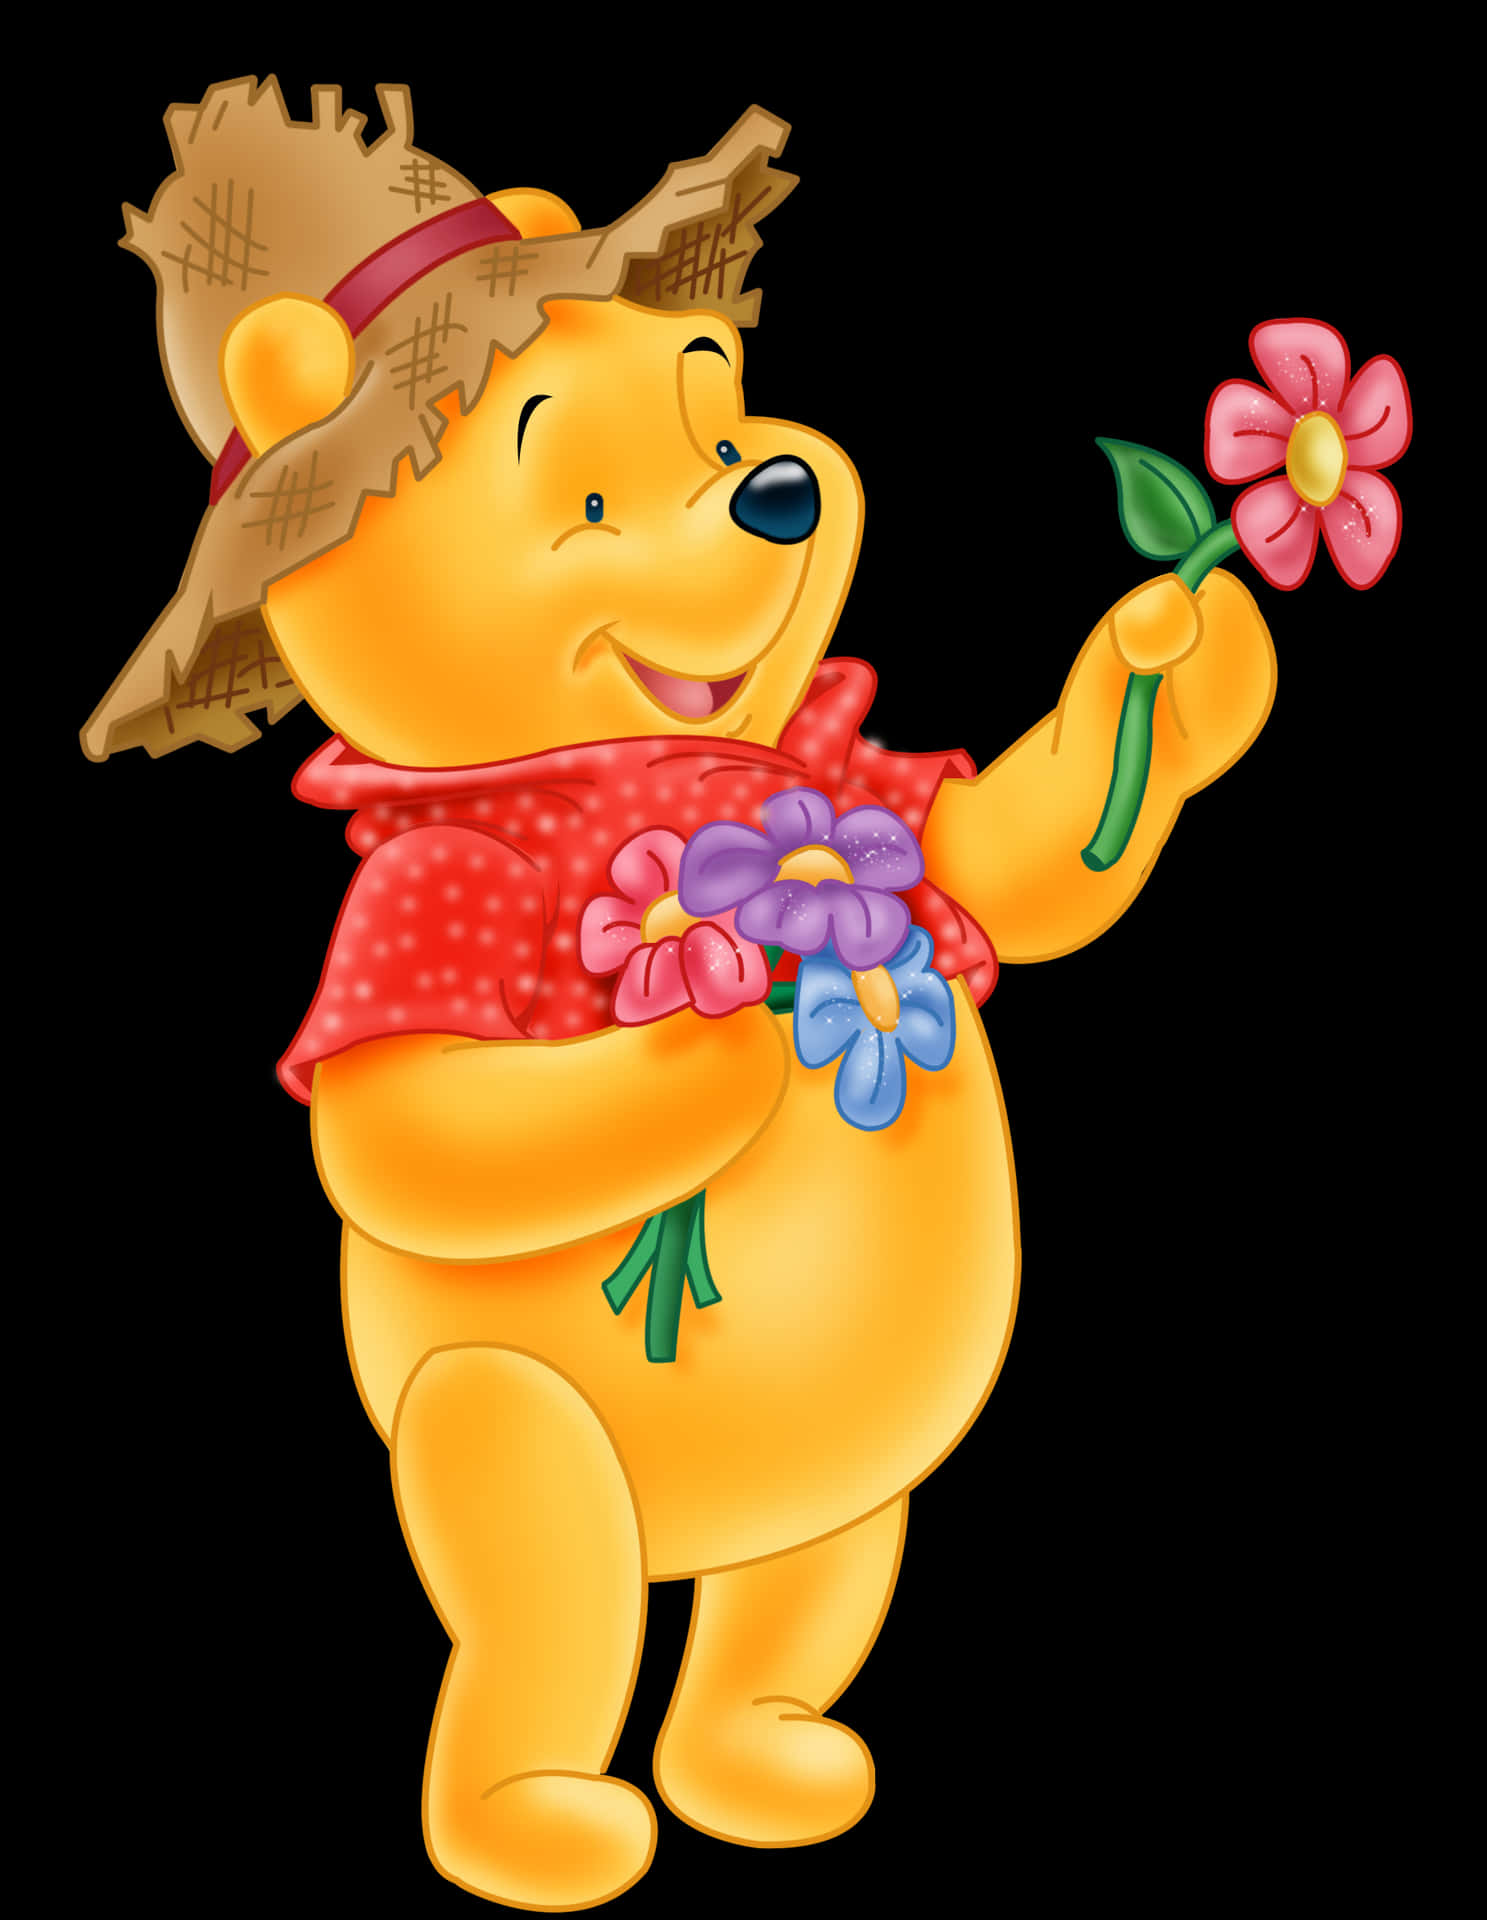 Unaimagen Clásica De Winnie The Pooh Abrazando A Su Querido Teddy Bear